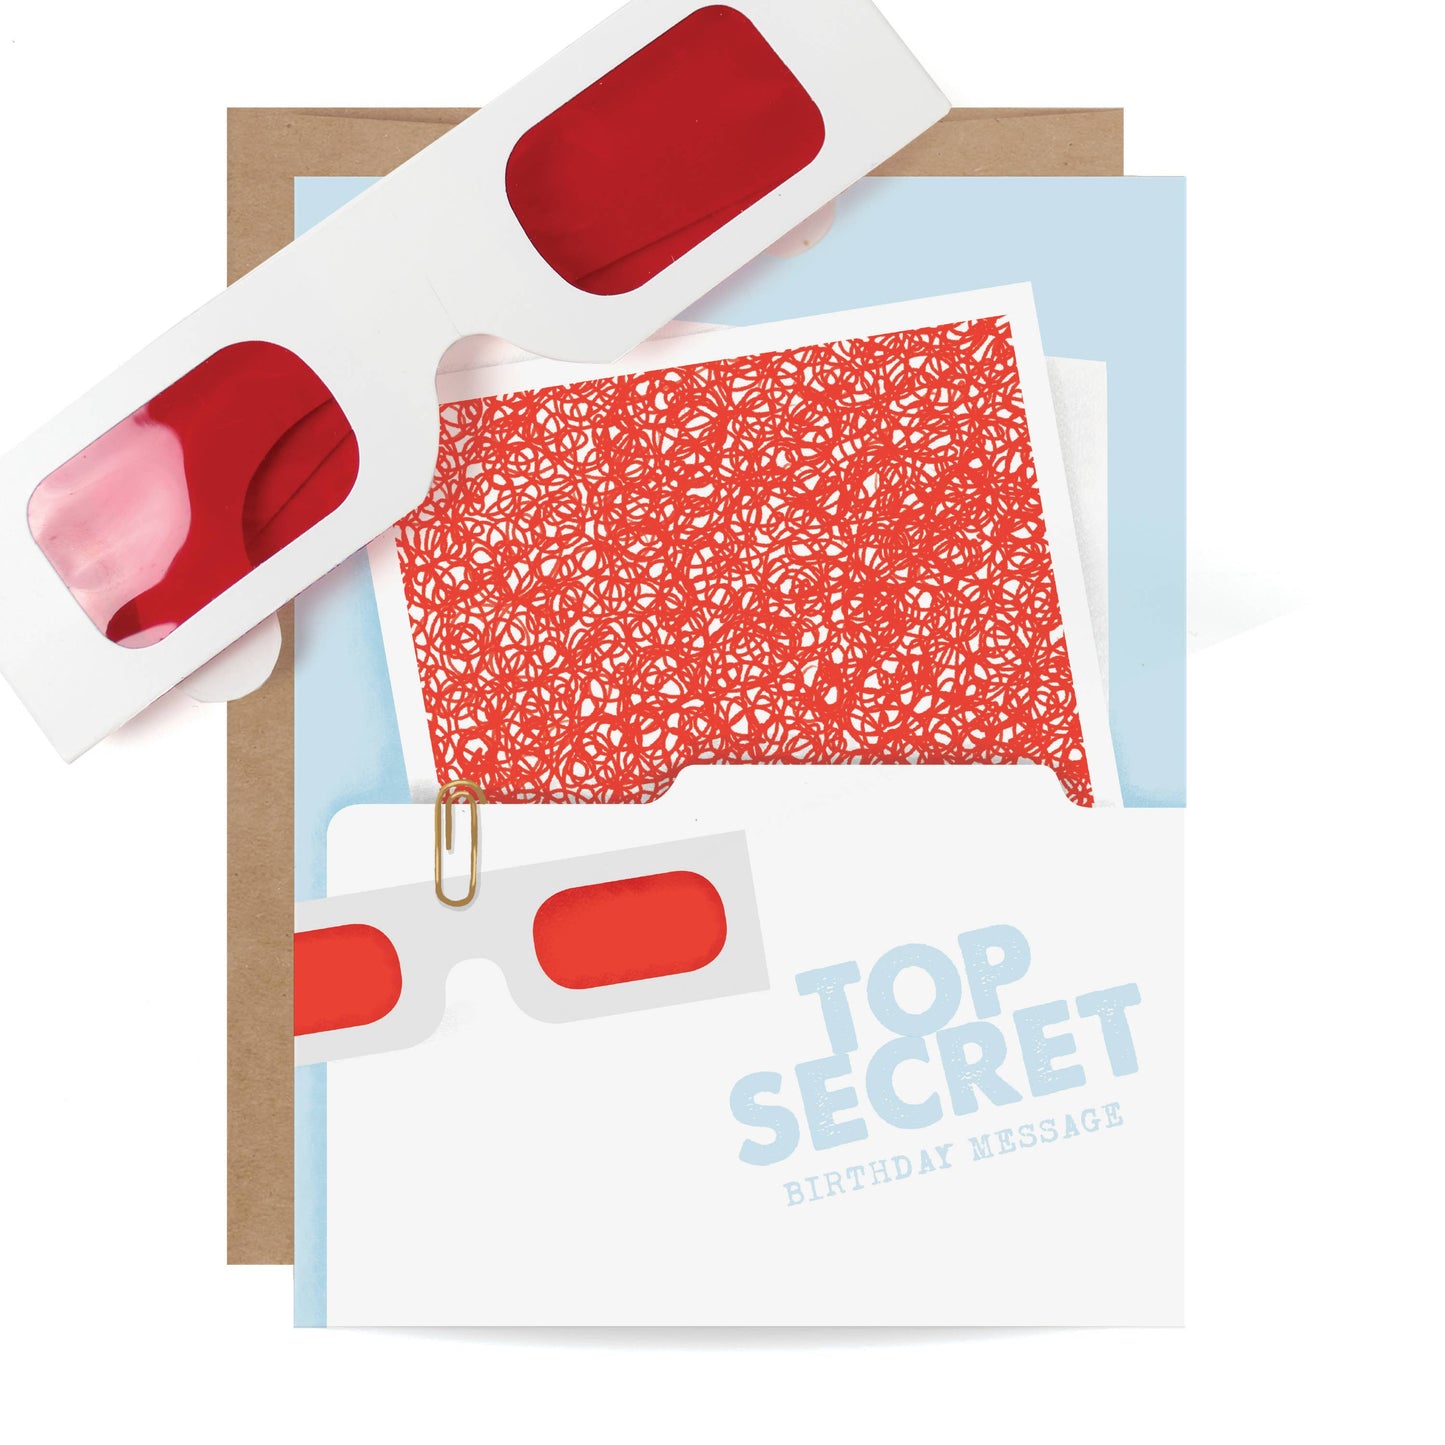 Inklings Paperie | 'Top Secret' Hidden Message Decoder Card